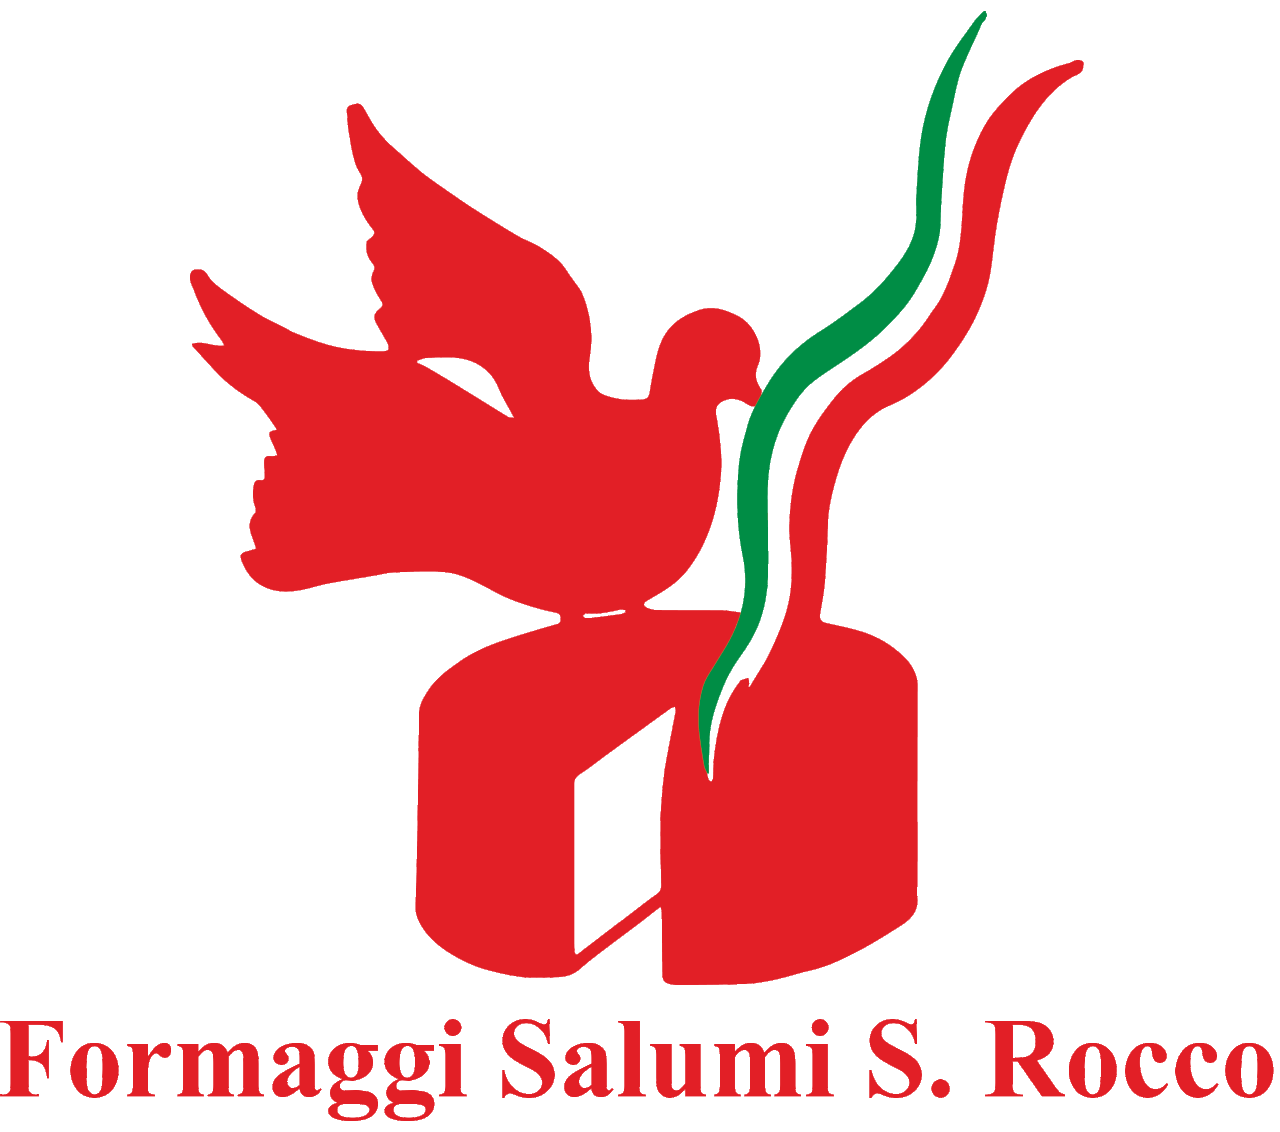 Formaggi e salumi S. Rocco - Distribuzione Formaggi salumi a Brescia